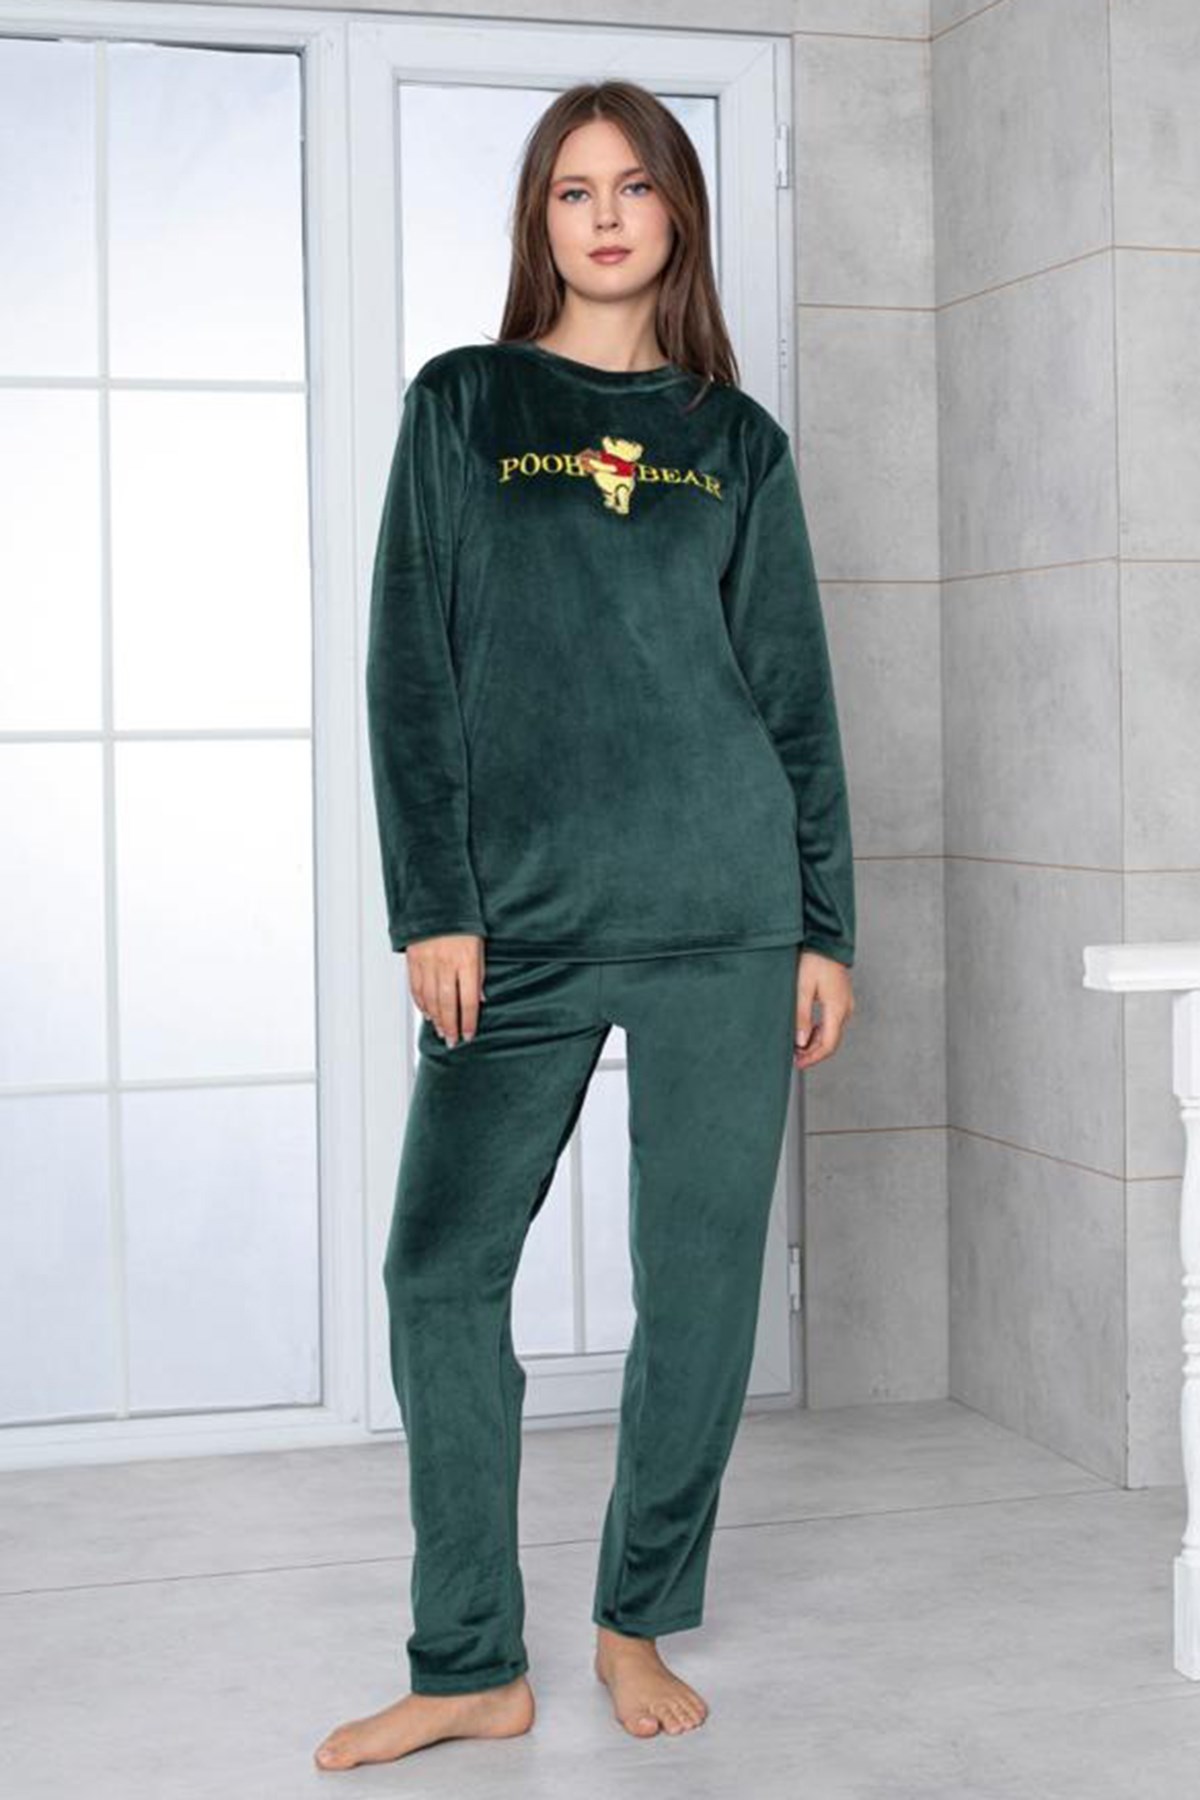 Kadife Kumaş Teknur 52161 Yeşil Renk Kadın Uzun Kol Pijama Takımı